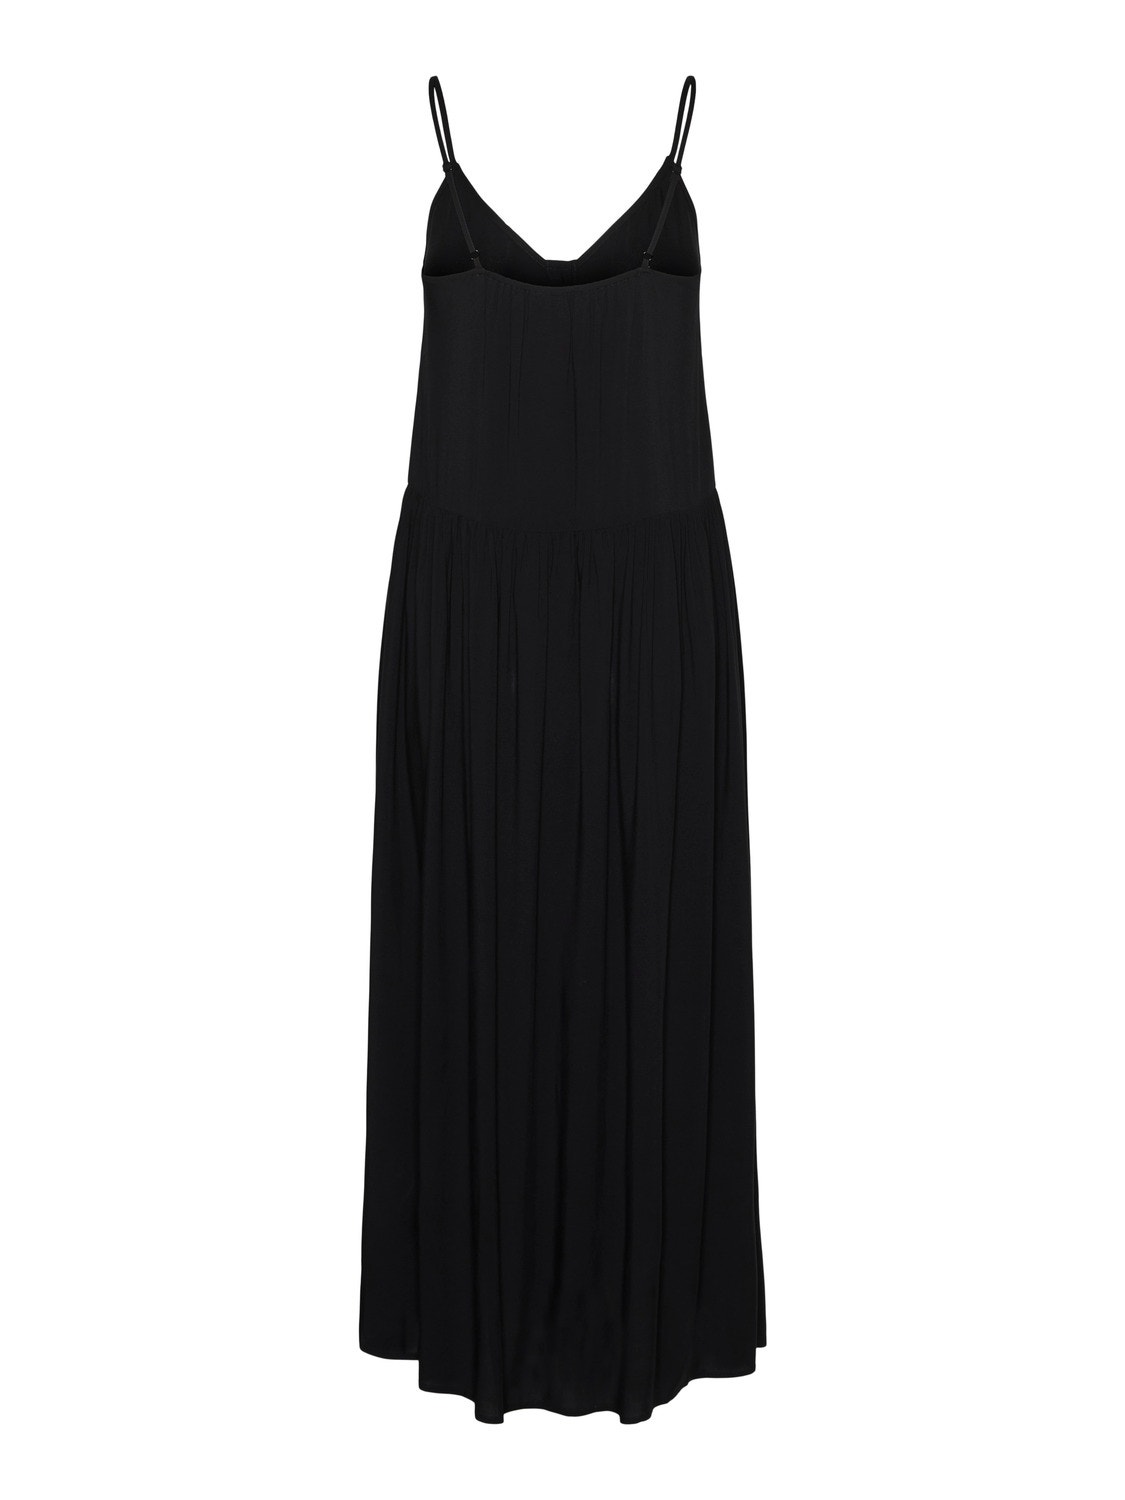 Vero Moda VMALBA Midi dress -Black - 10301192